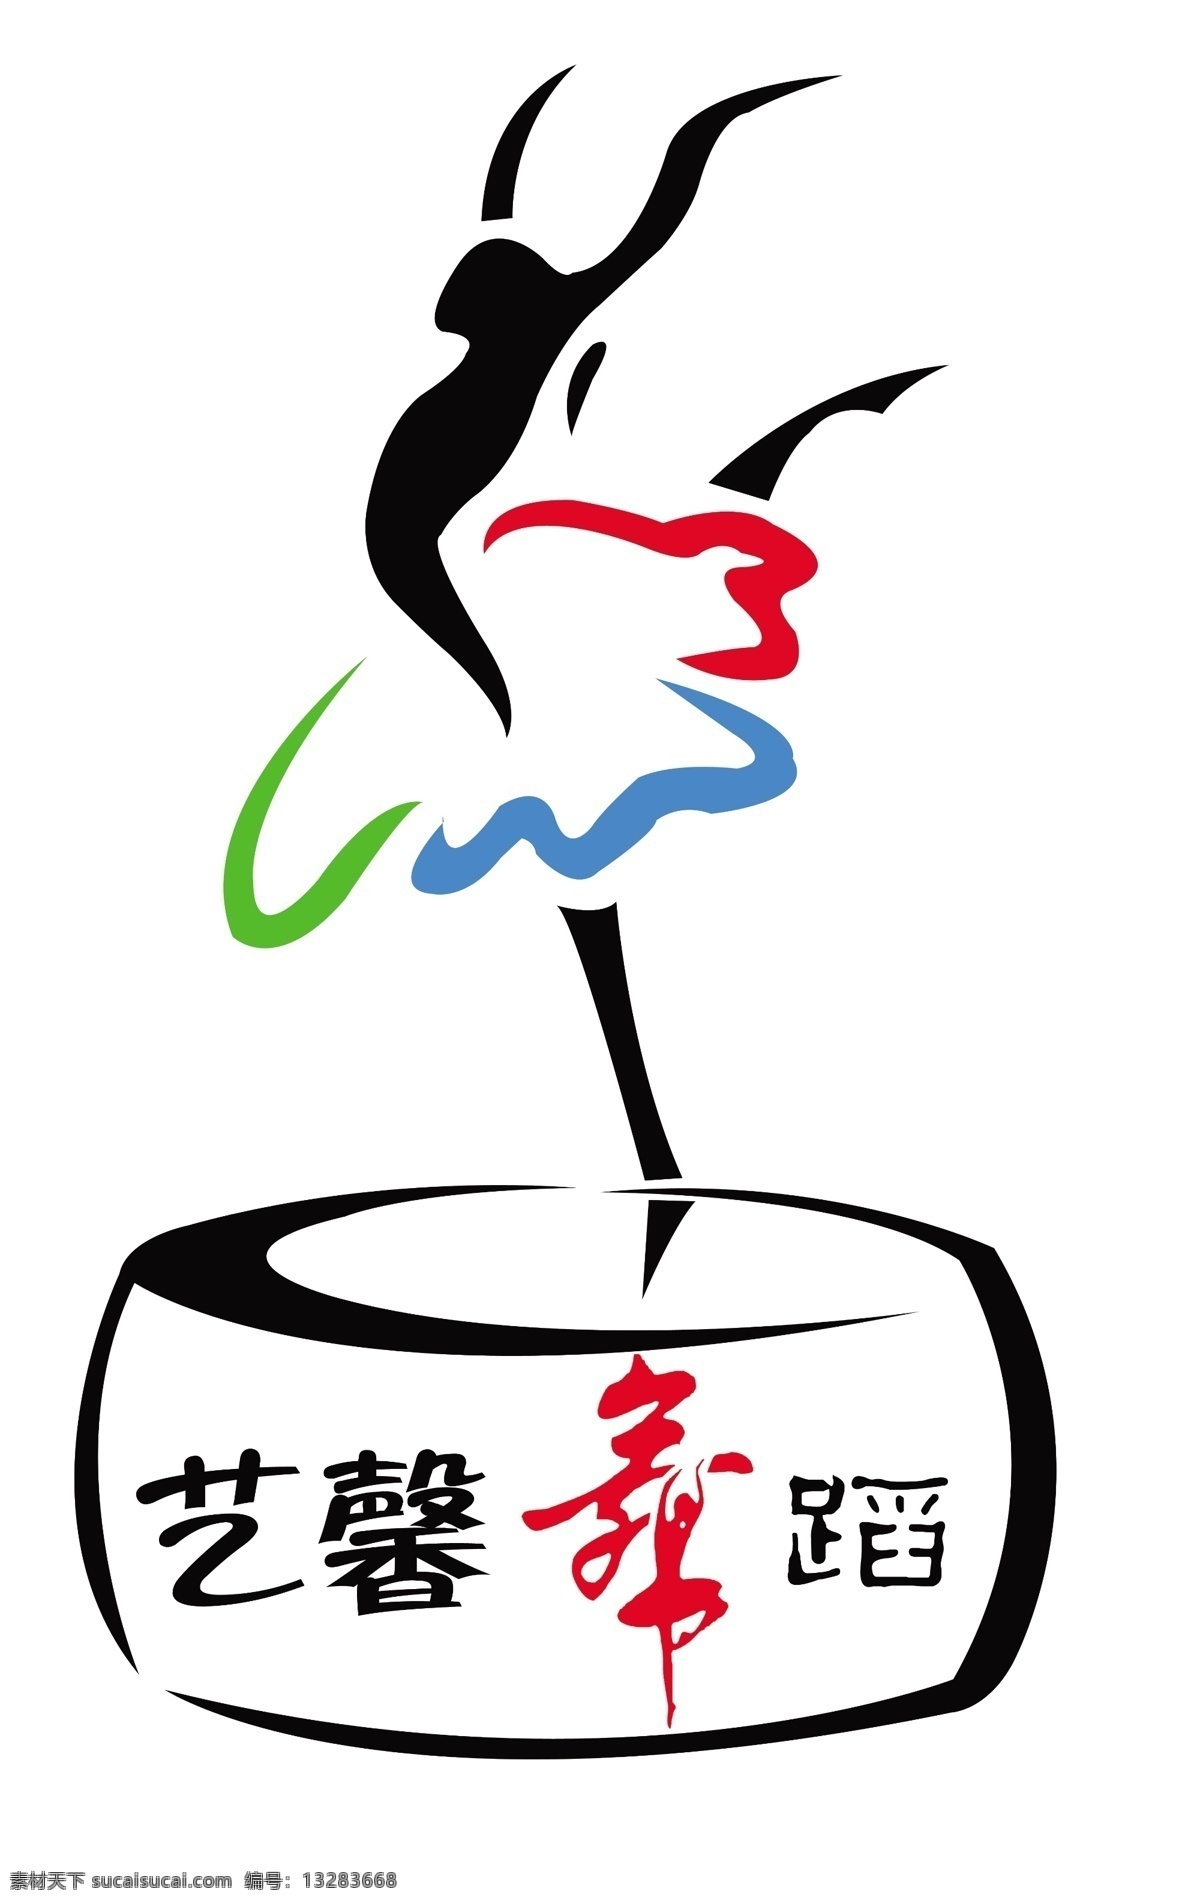 标志免费下载 logo 标志 广告设计模板 国内广告设计 教育 民族 培训 舞蹈 源文件 海报 企业文化海报